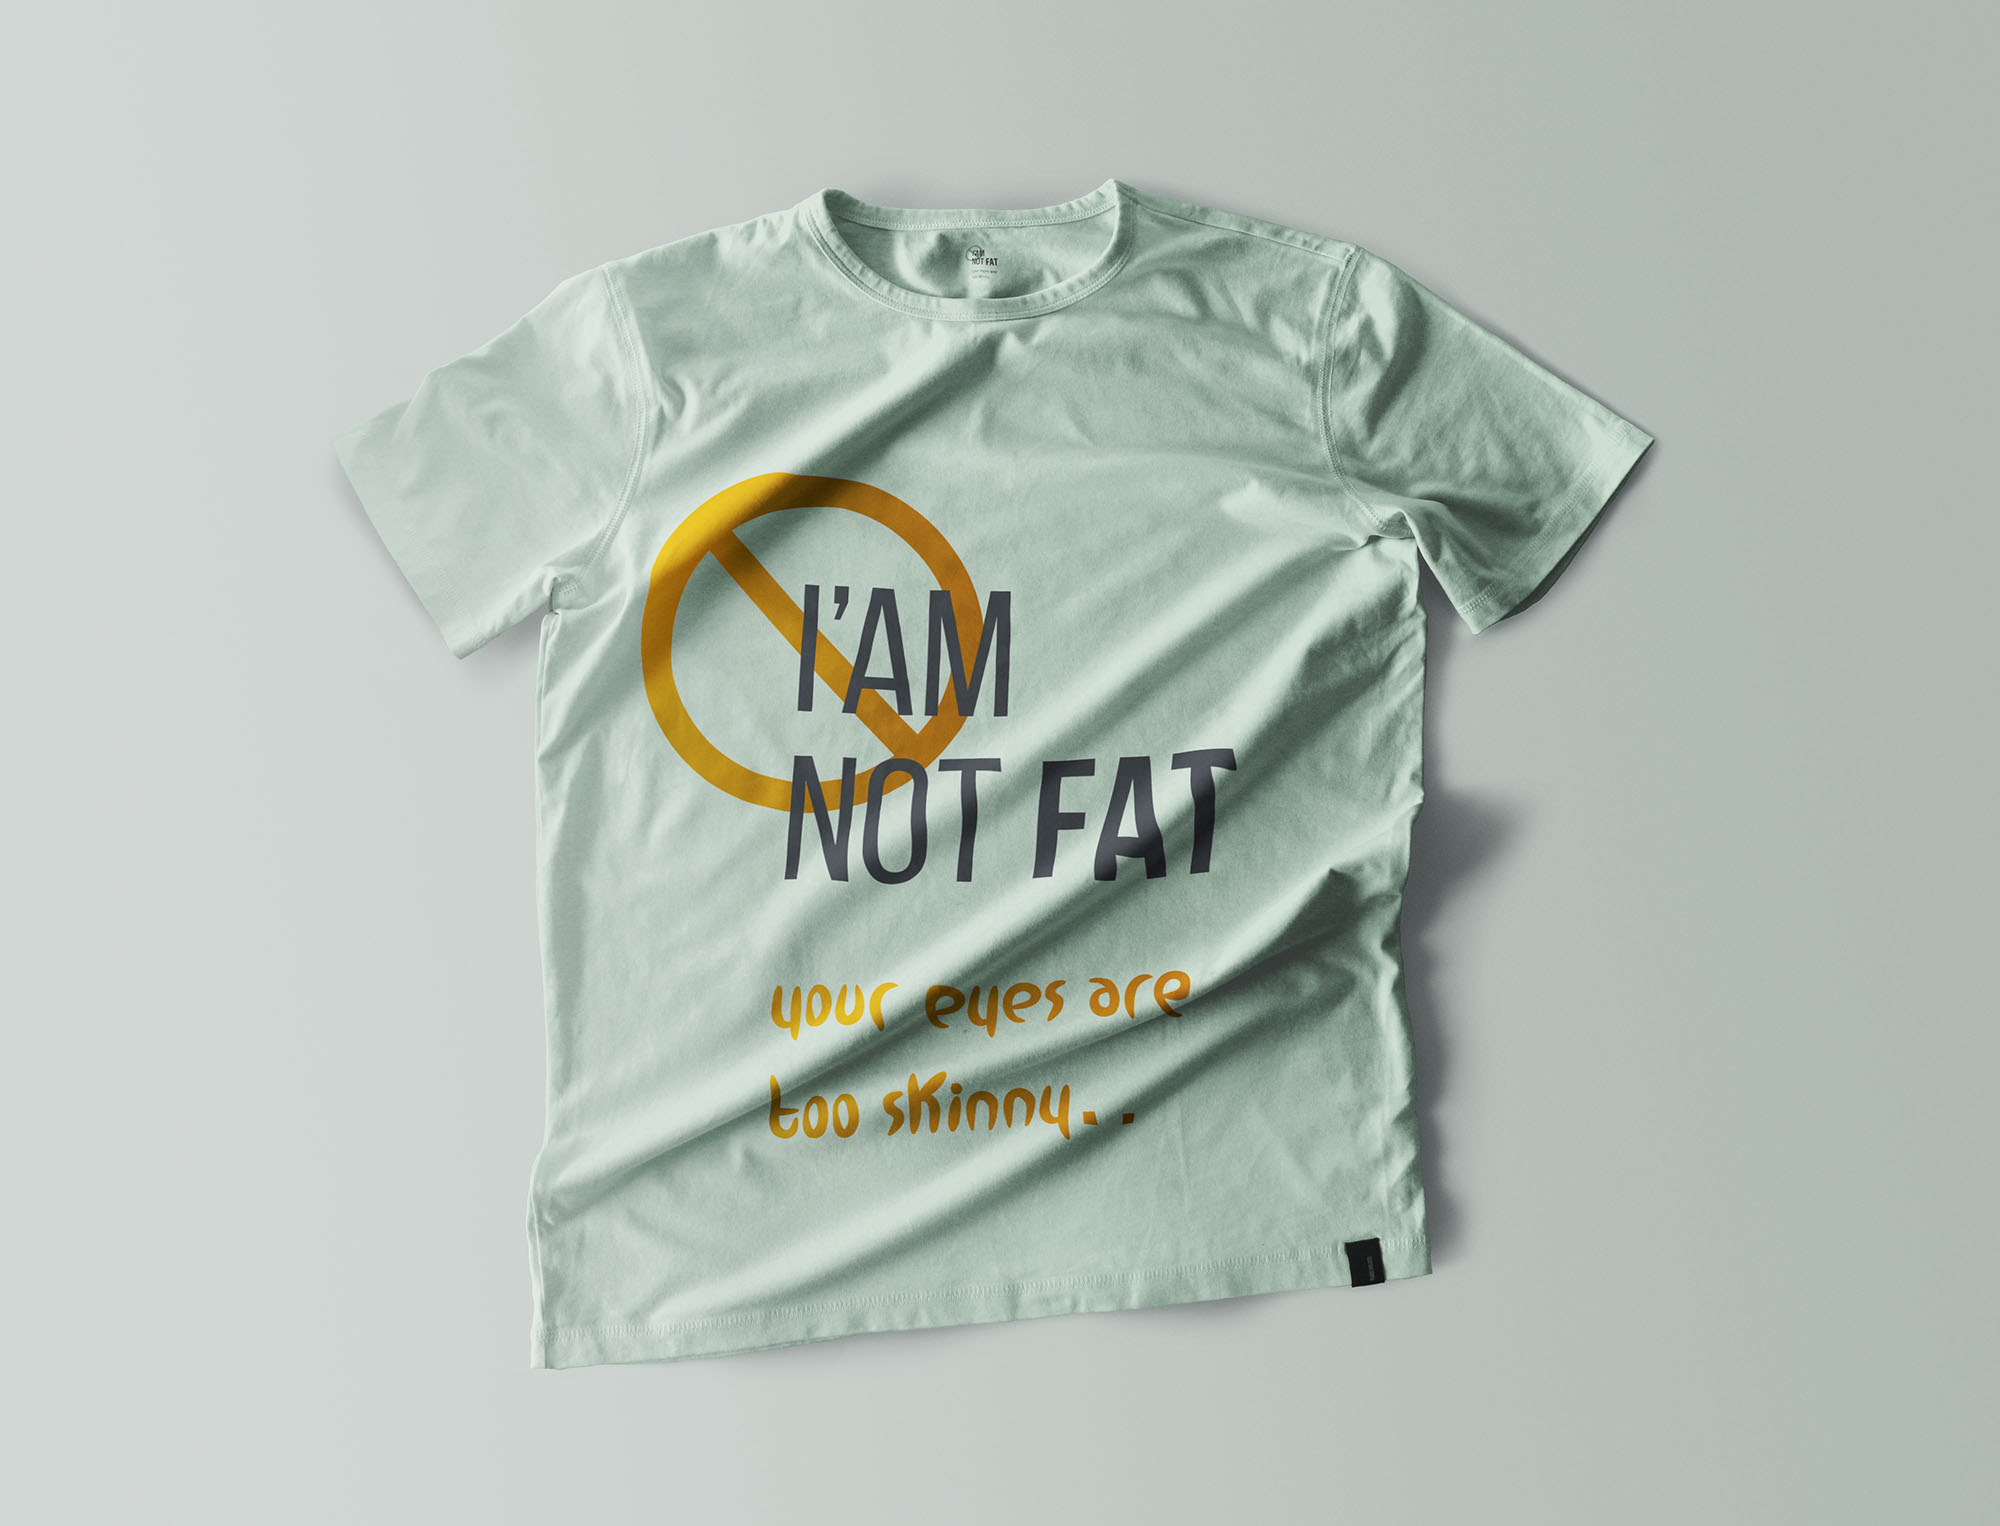 9 个褶皱T恤设计效果图样机 9 T-Shirt Mockups 样机素材 第4张